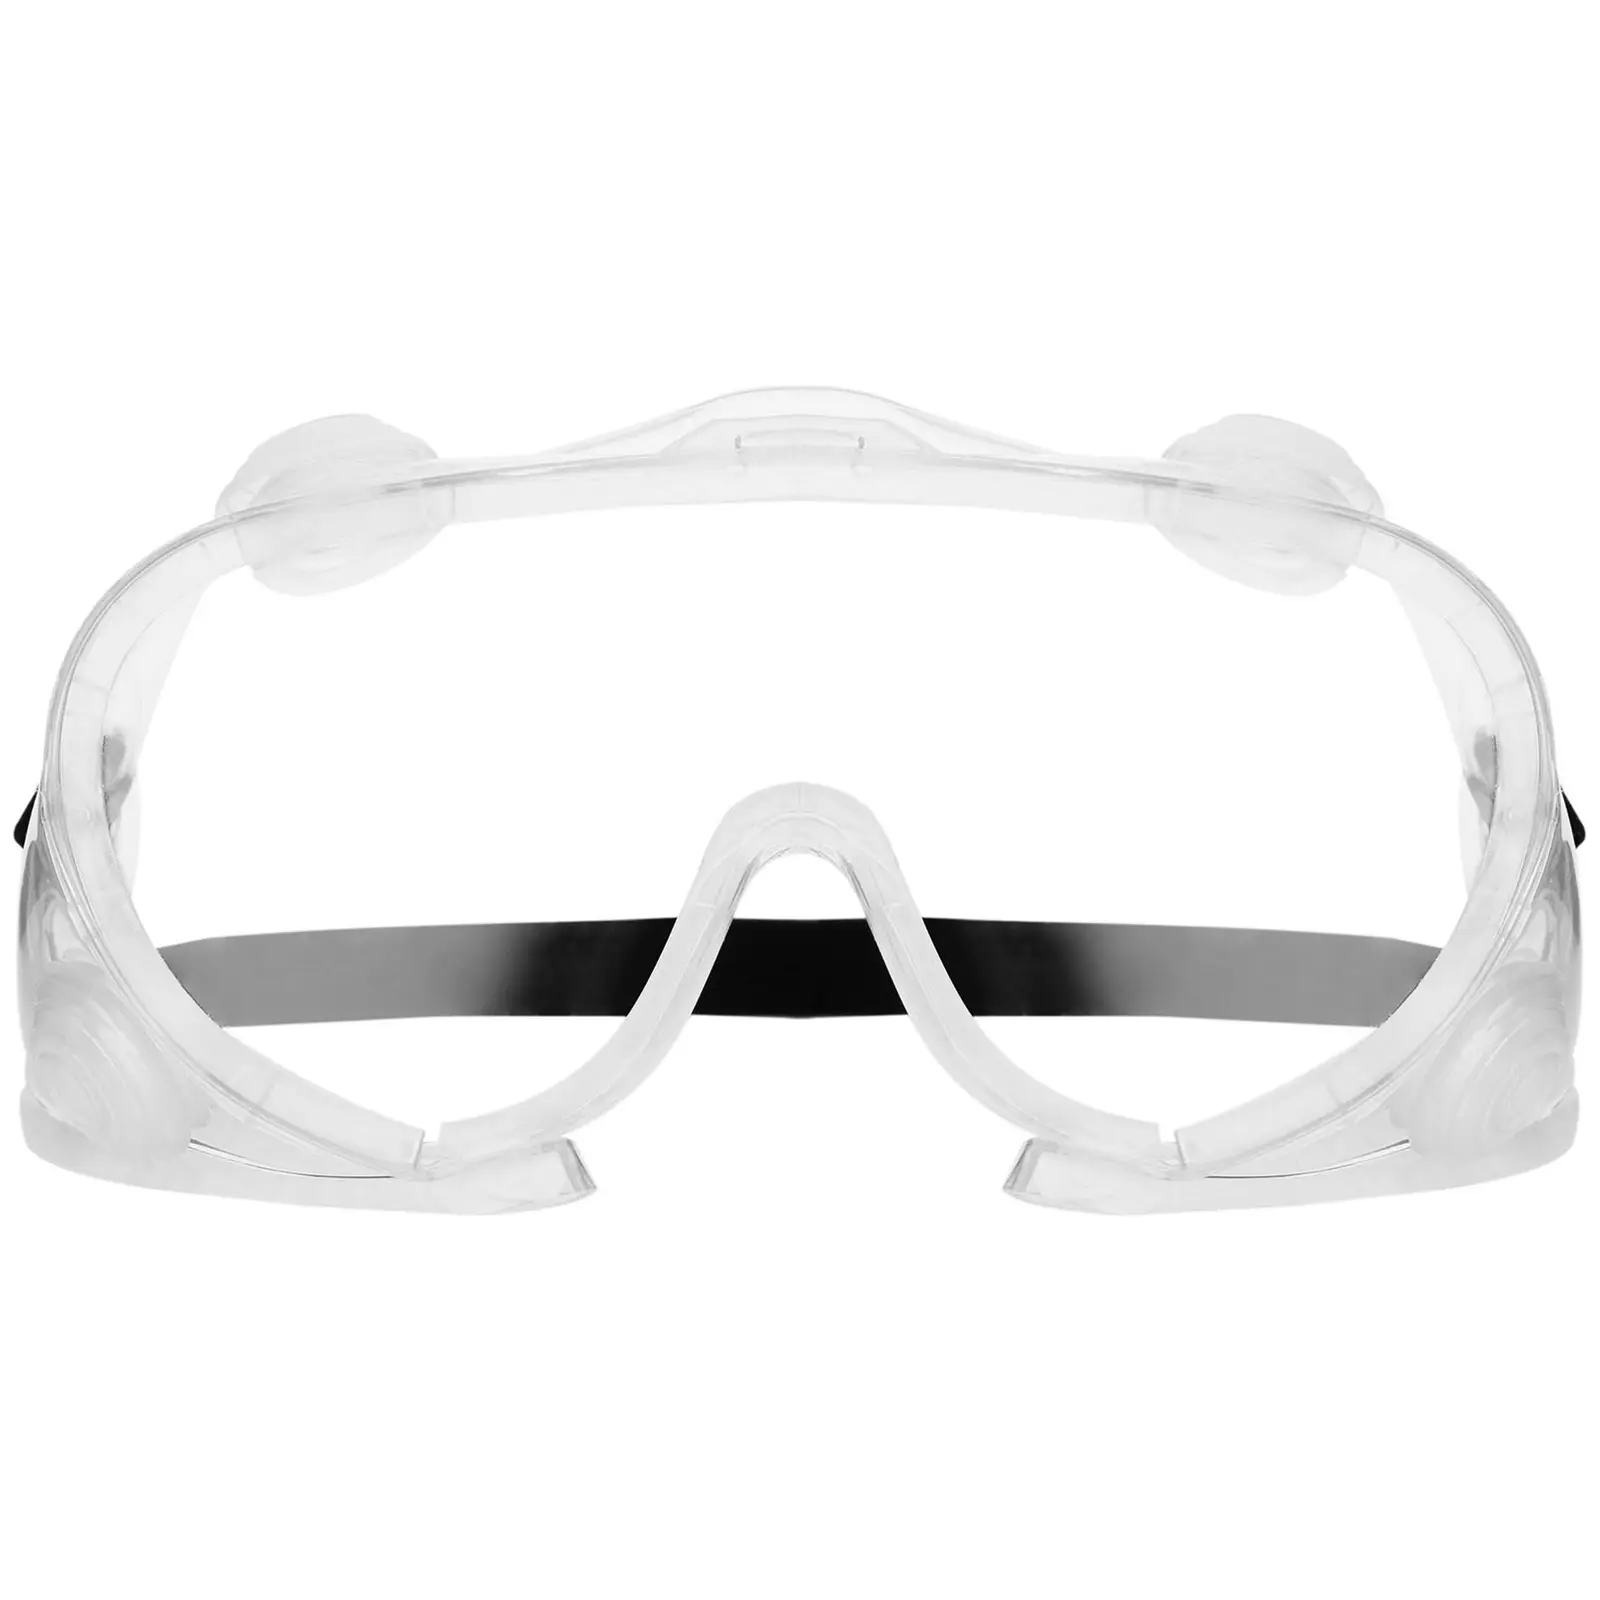 Beskyttelsesbriller - 10 stk. - klart glas - universalstørrelse